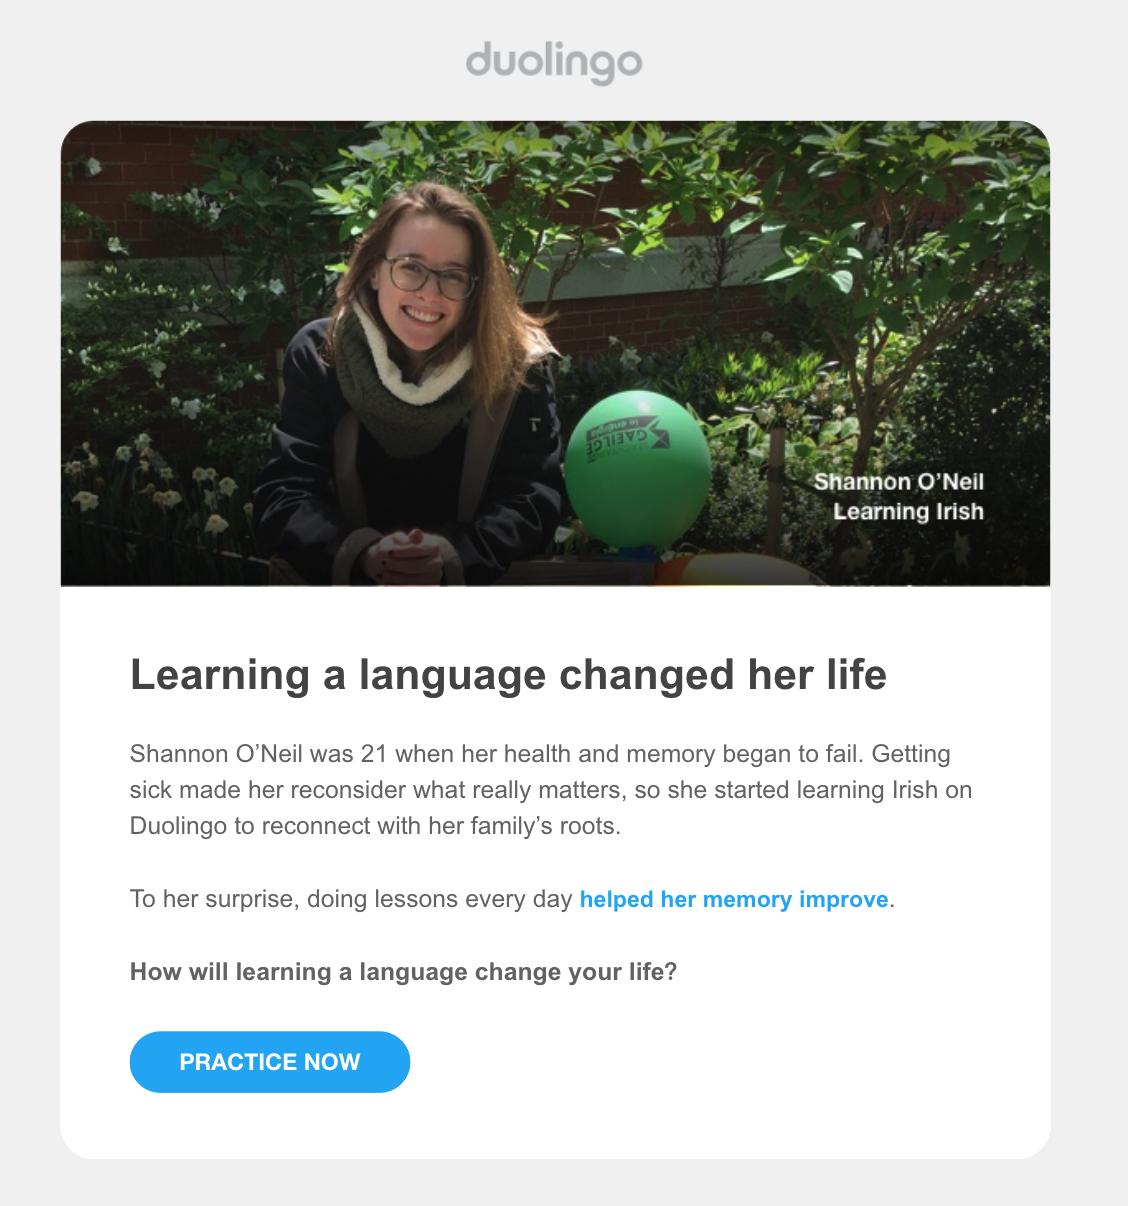 Email de Duolingo con la historia de un cliente